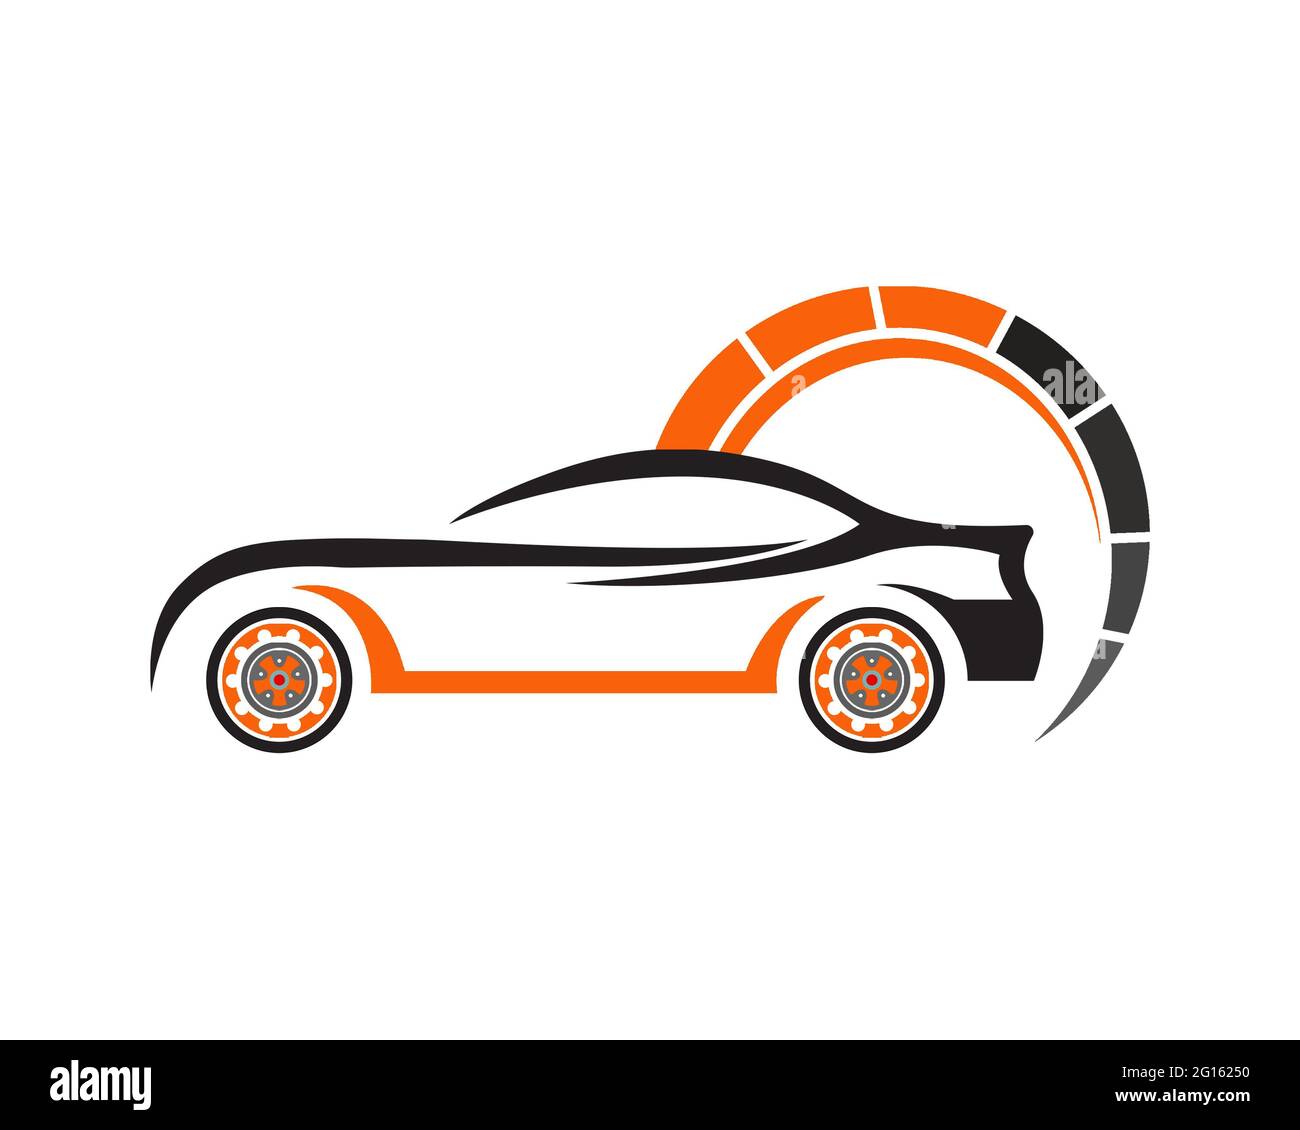 https://c8.alamy.com/comp/2G16250/car-logo-2G16250.jpg